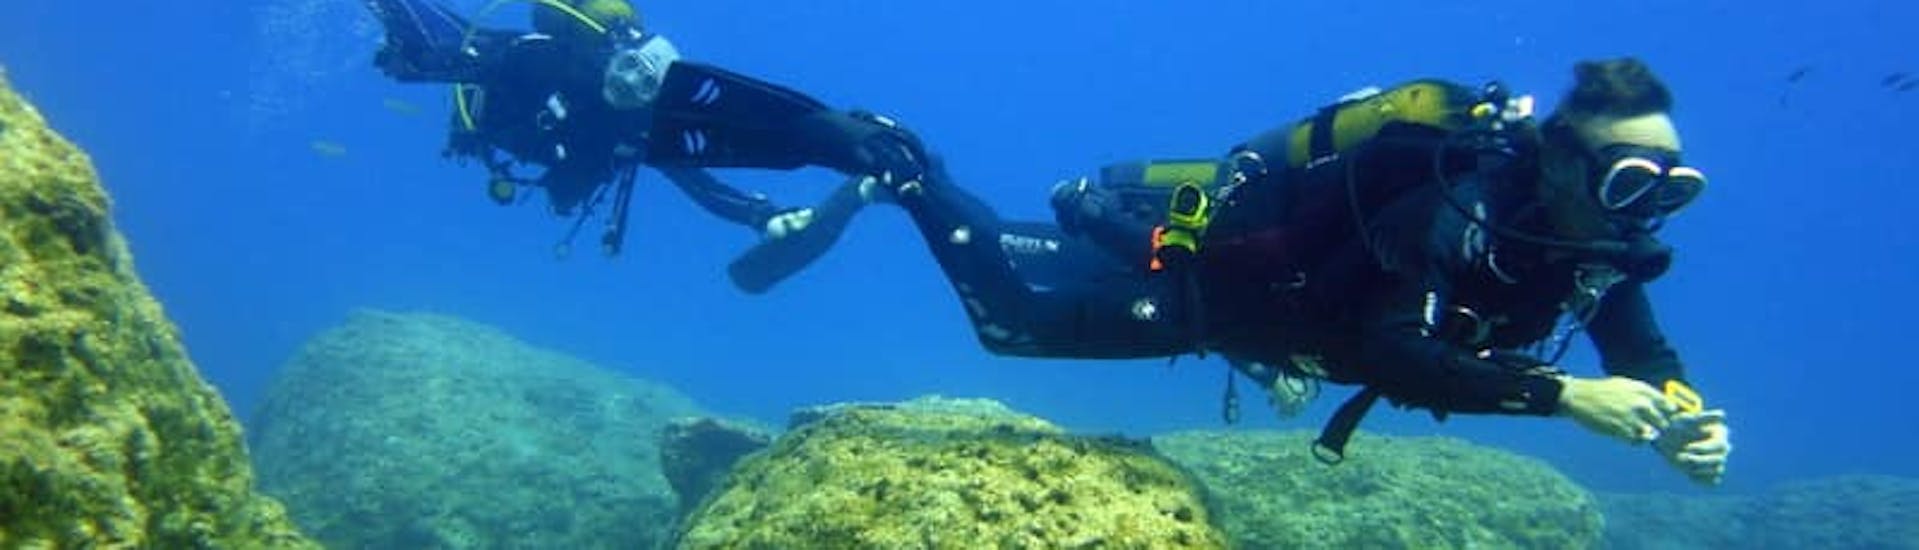 Immersioni guidate a Zante per subacquei certificati.